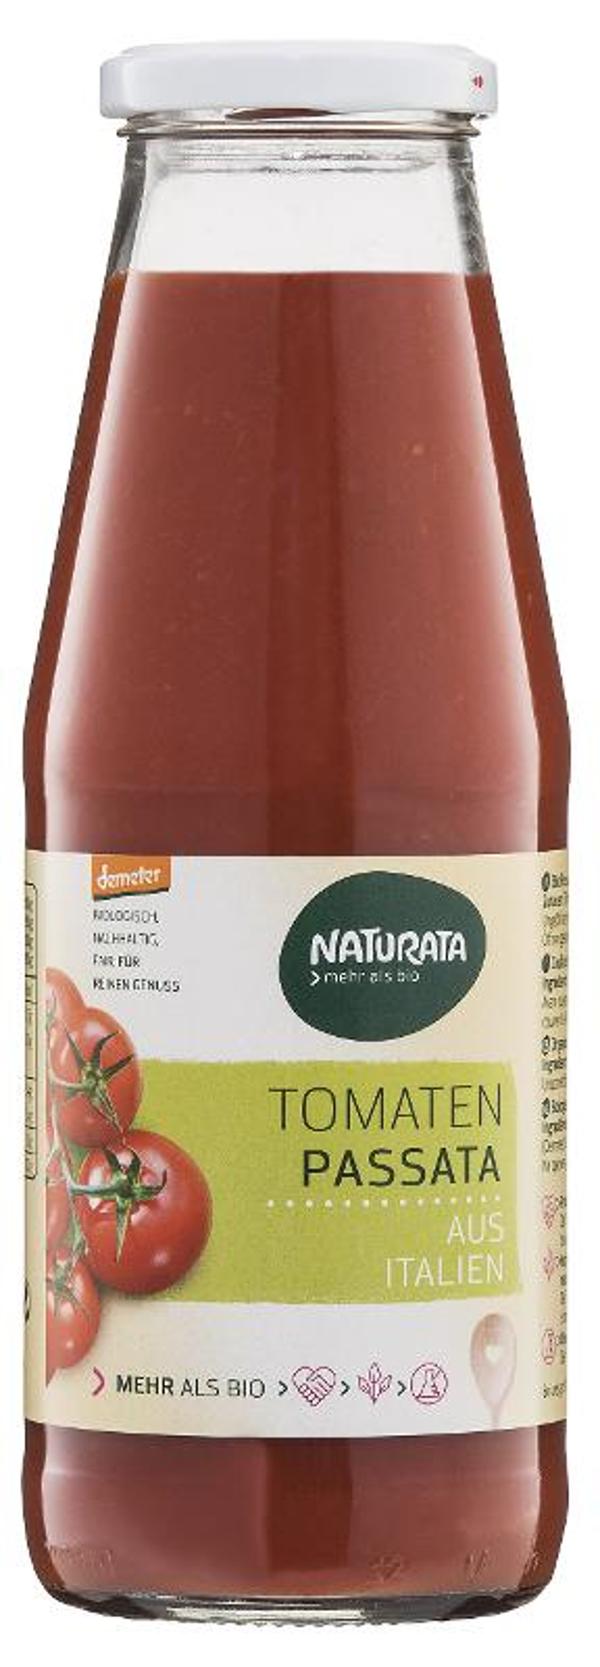 Produktfoto zu Tomaten Passata von Naturata